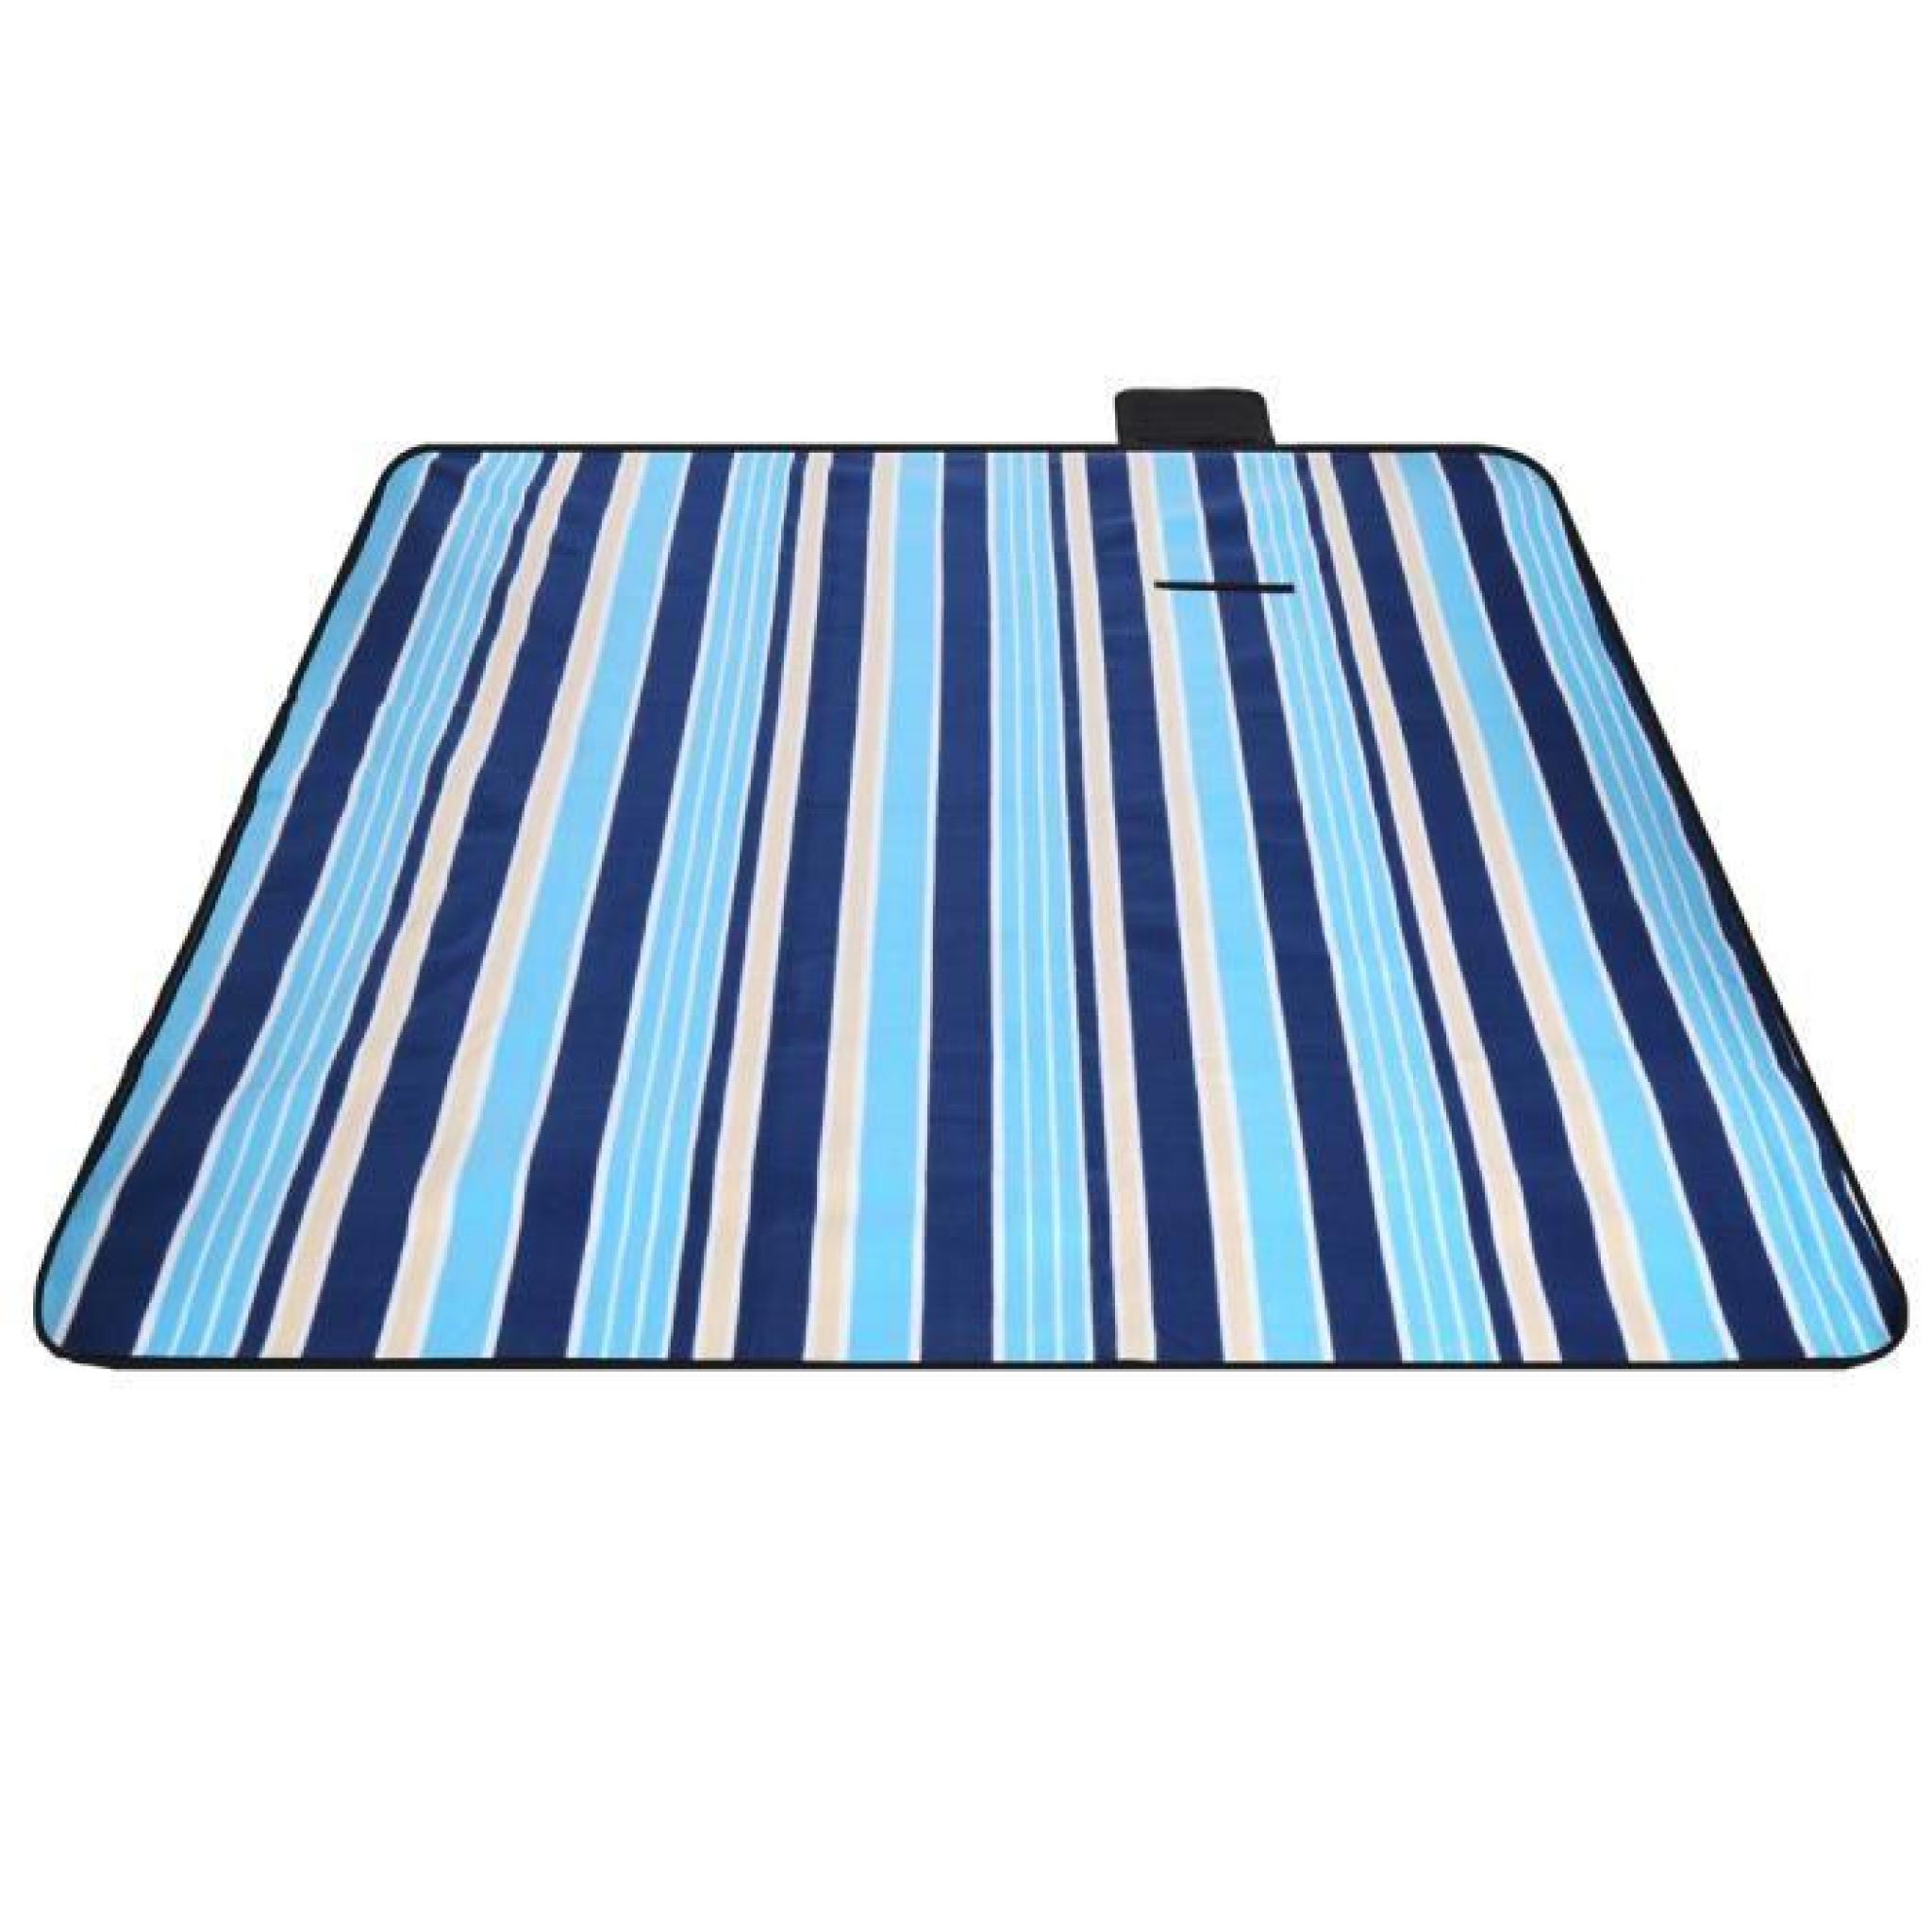 couverture plage pliage 1pcs carrée 185 x 185cm couverture Plaid imperméable à l'eau Camping voyage  pas cher